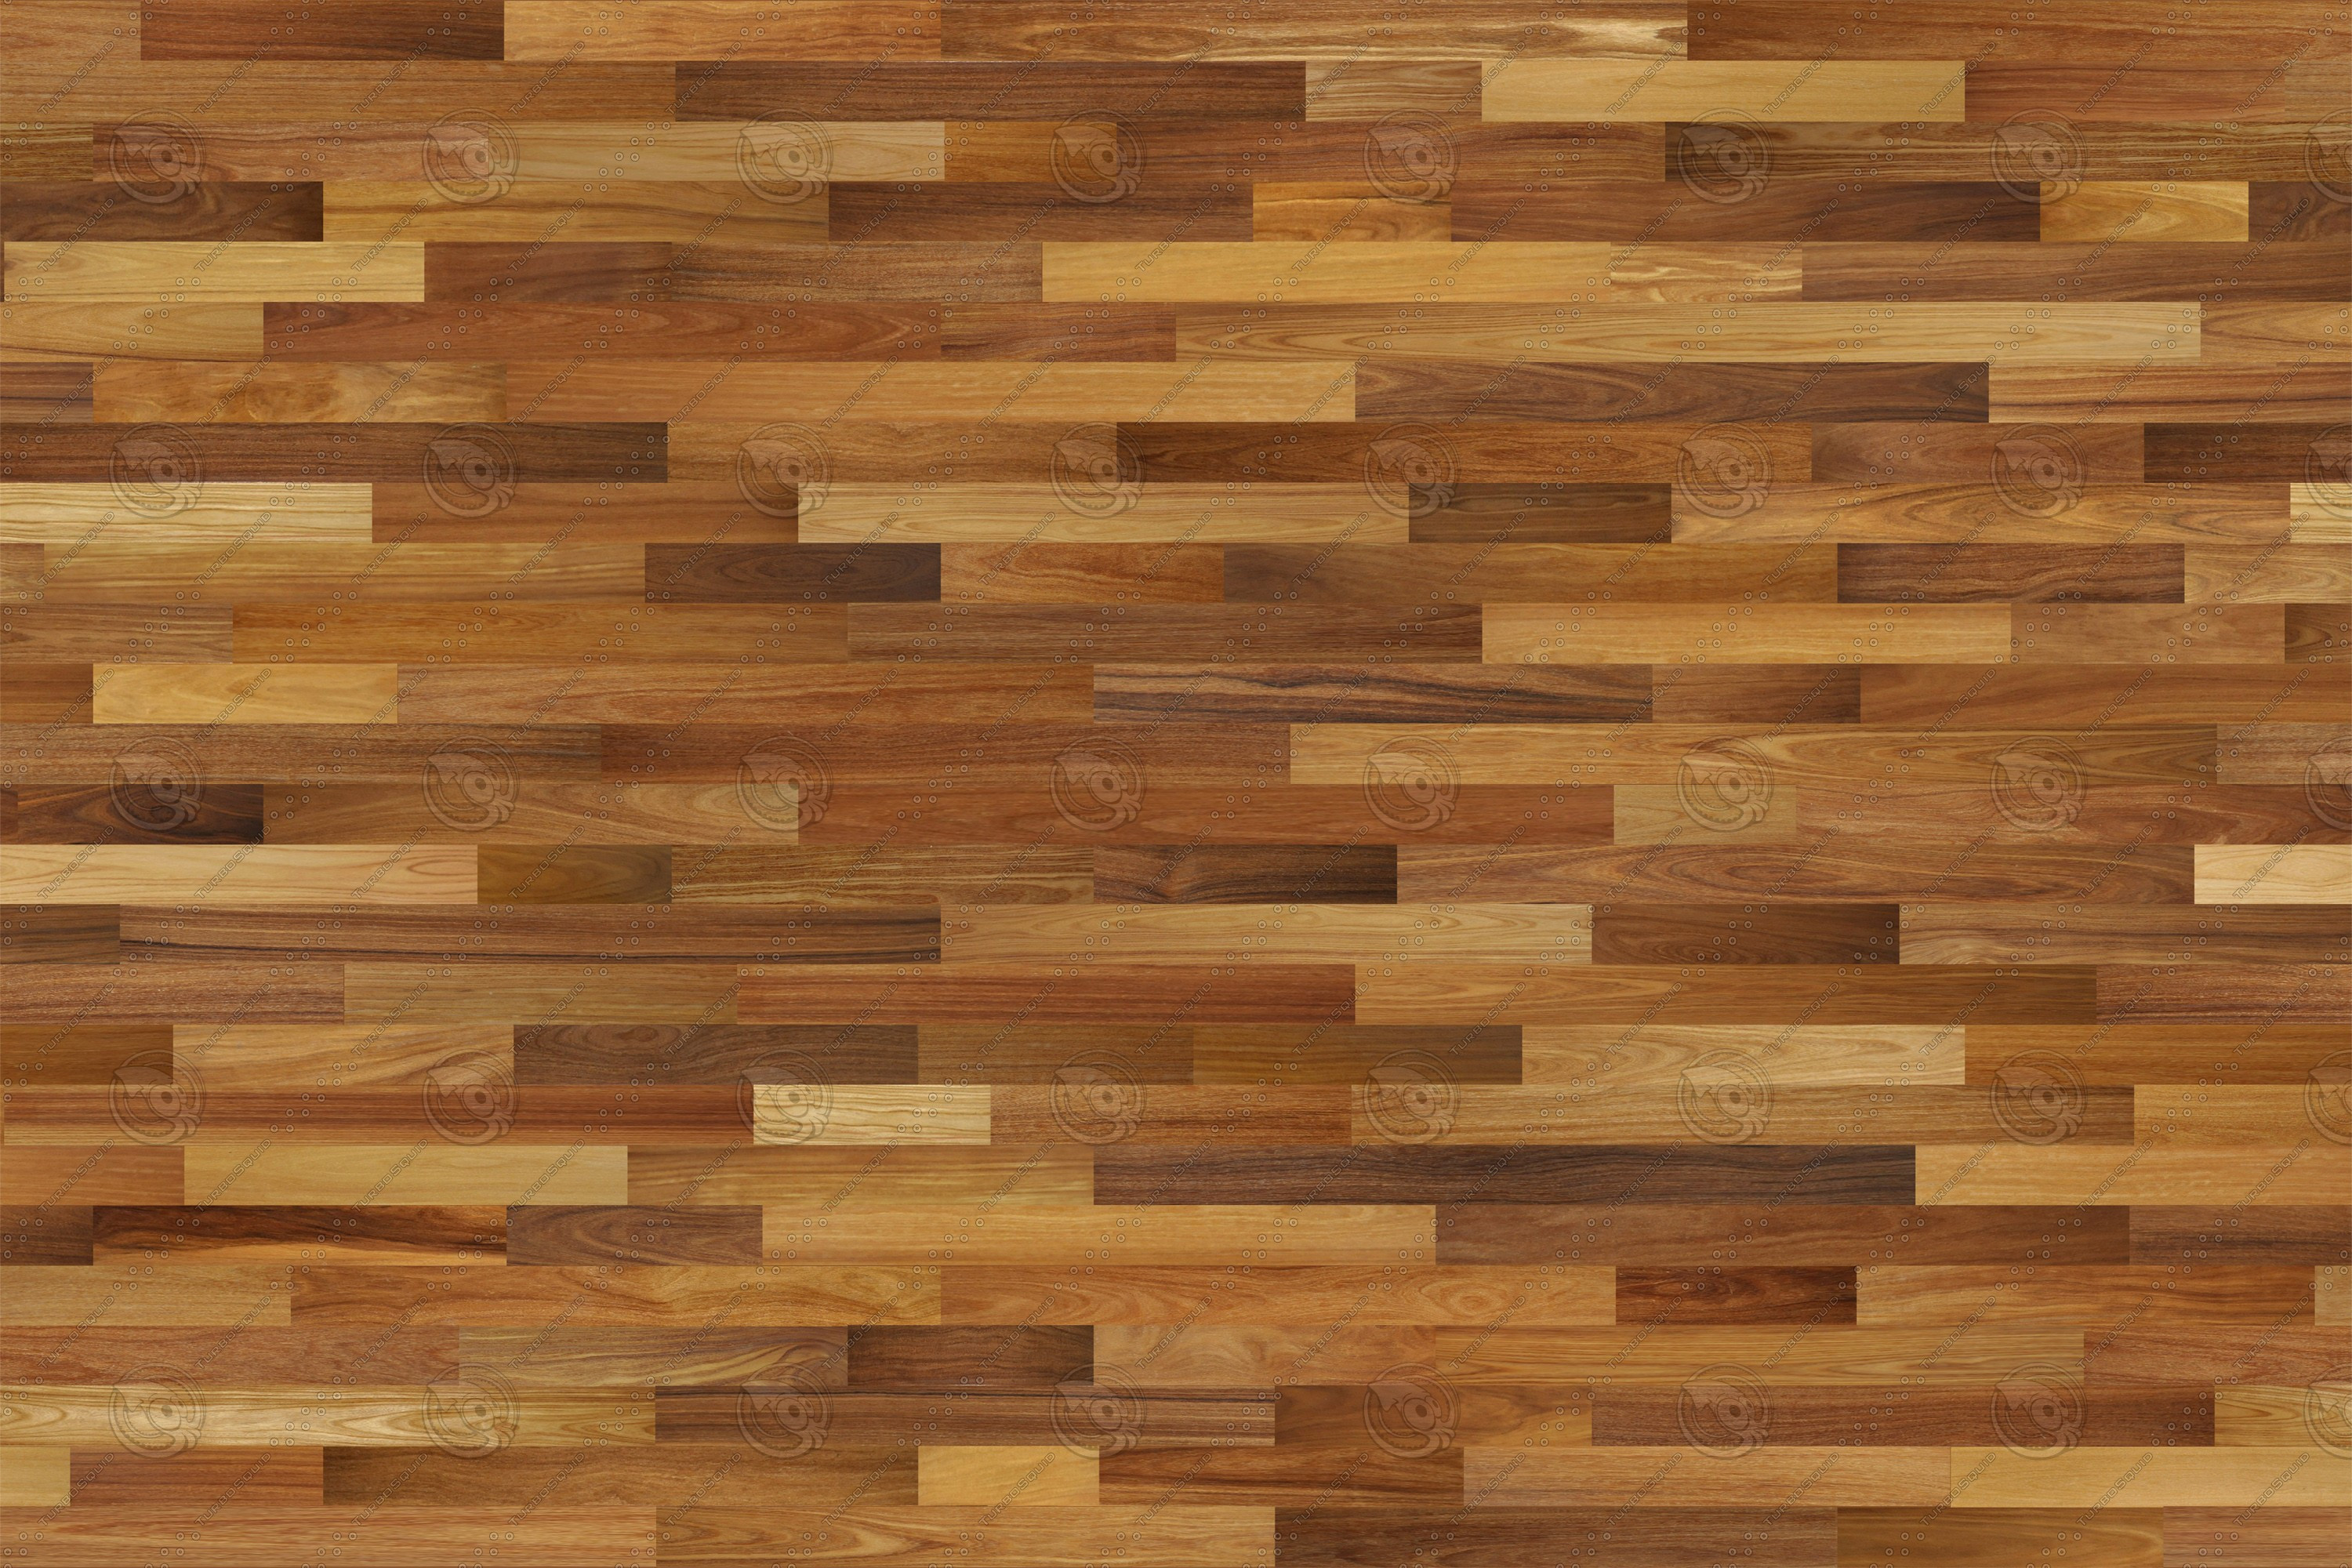 30 Elegant Hardwood Floor Texture 2024 free download hardwood floor texture of hardwood floor patterns best of oak wood flooring texture top 28 oak throughout hardwood floor patterns best of oak wood flooring texture top 28 oak wood floors 1 2